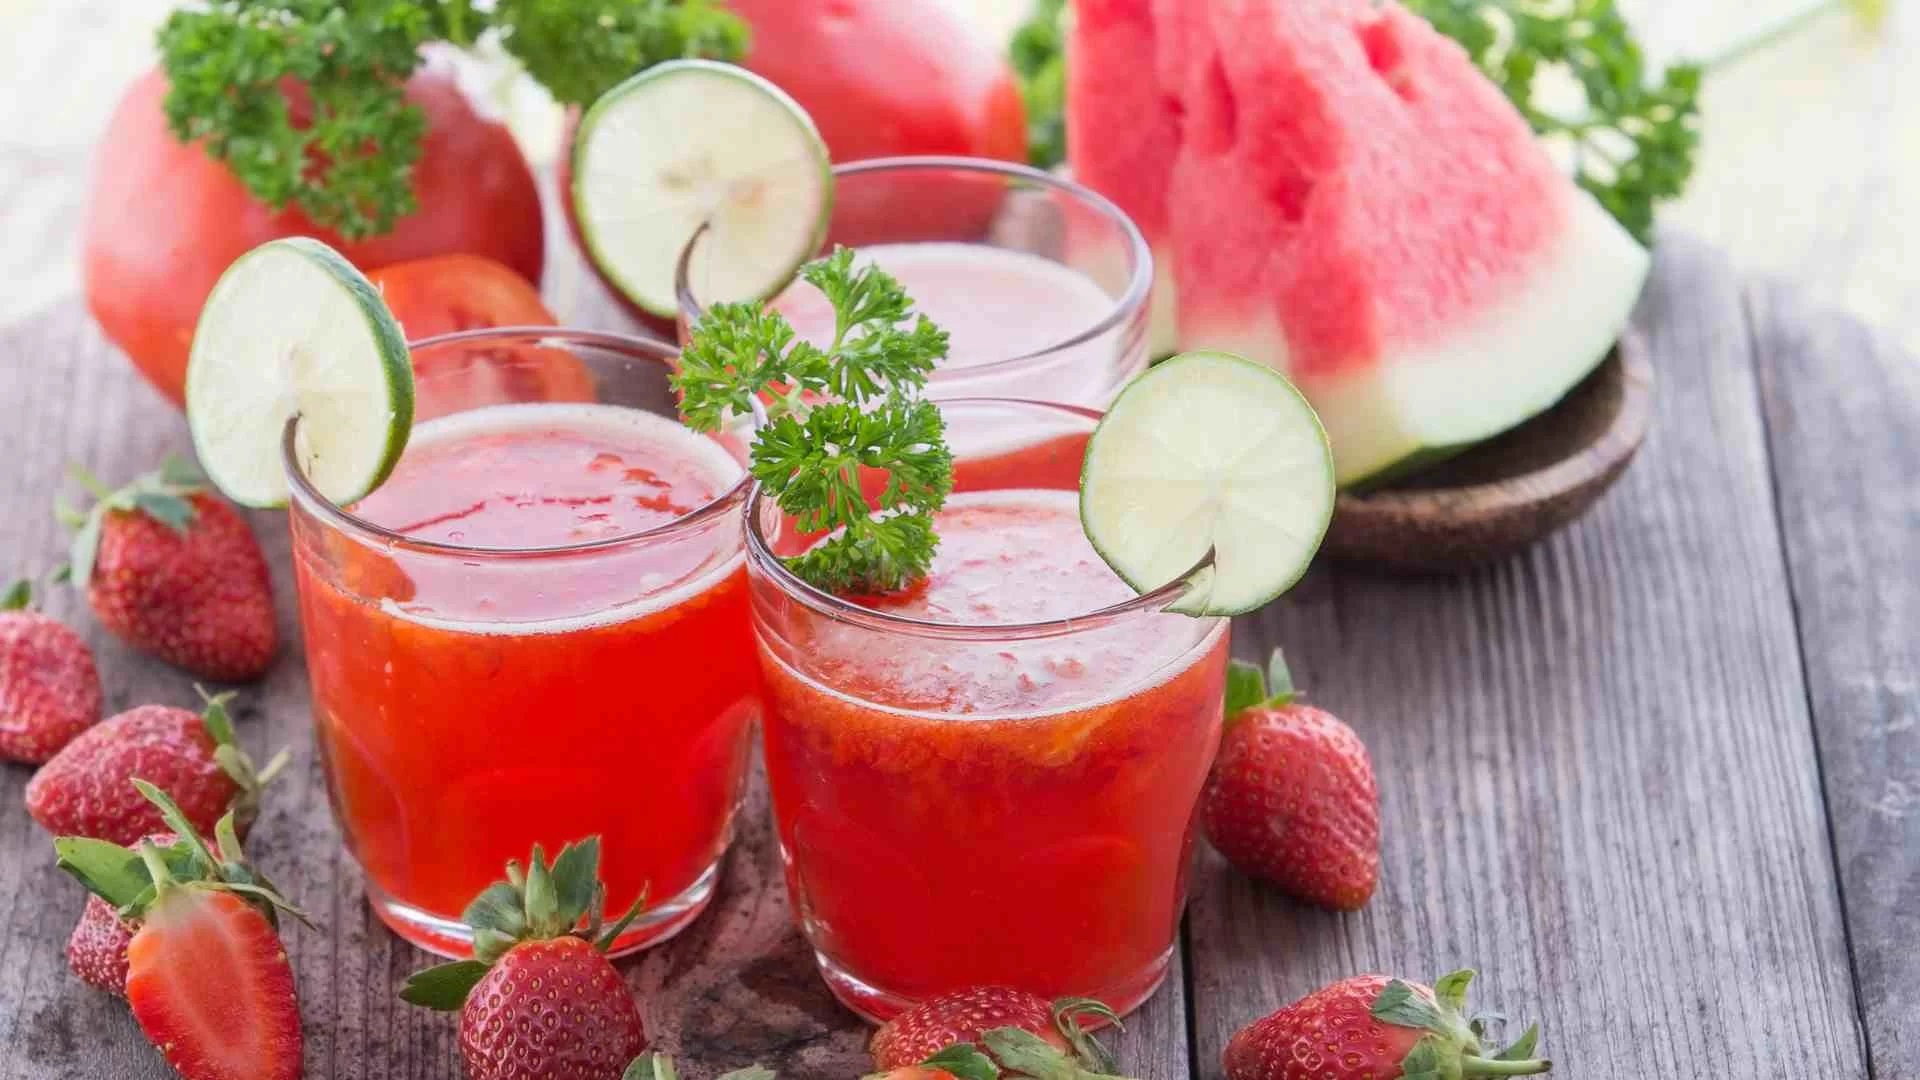 اسموتی هندوانه و توت فرنگی: طعمی خنک و دلچسب برای روزهای گرم تابستان